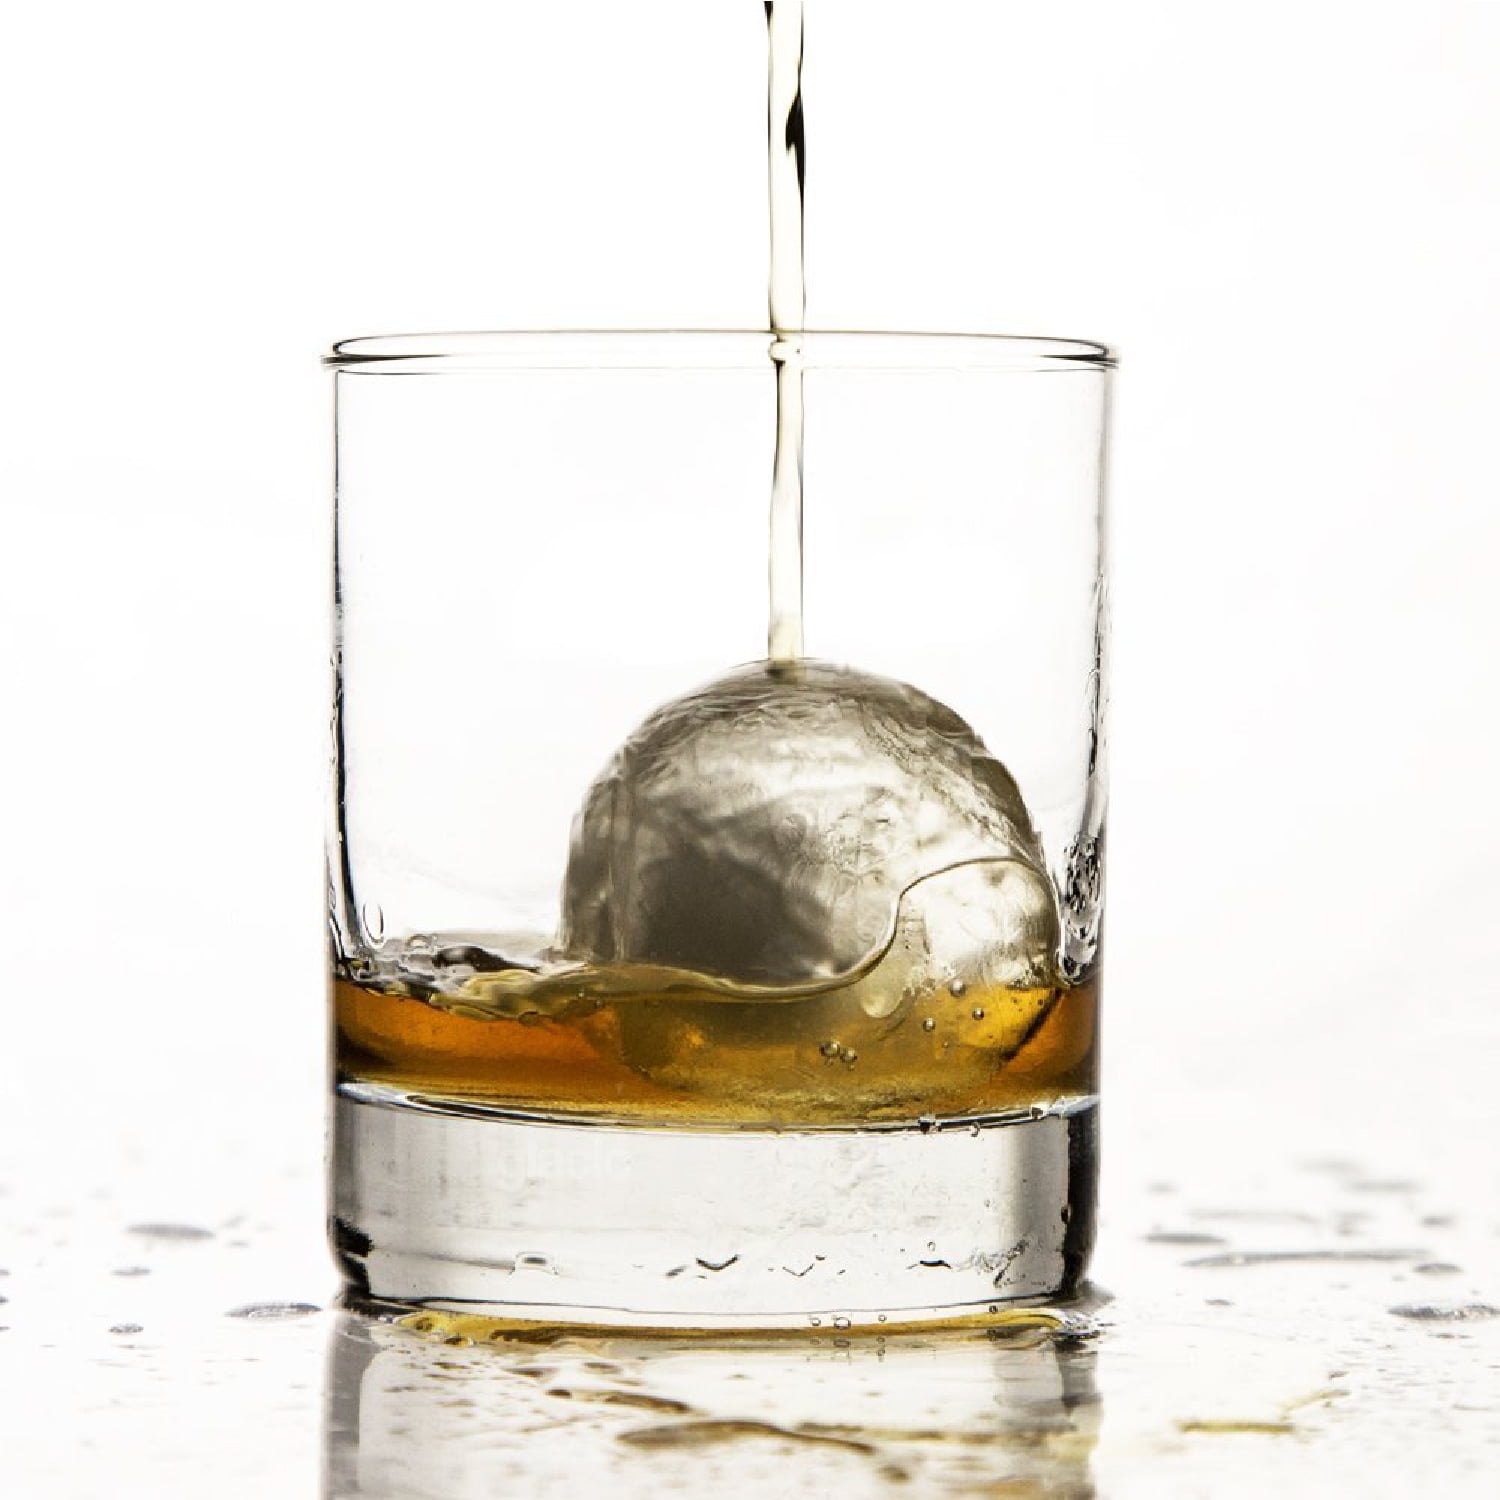 The Original Whiskey Ball Company - Sveres Jumbo Ice Ball Round Mold – The  Whiskey Ball